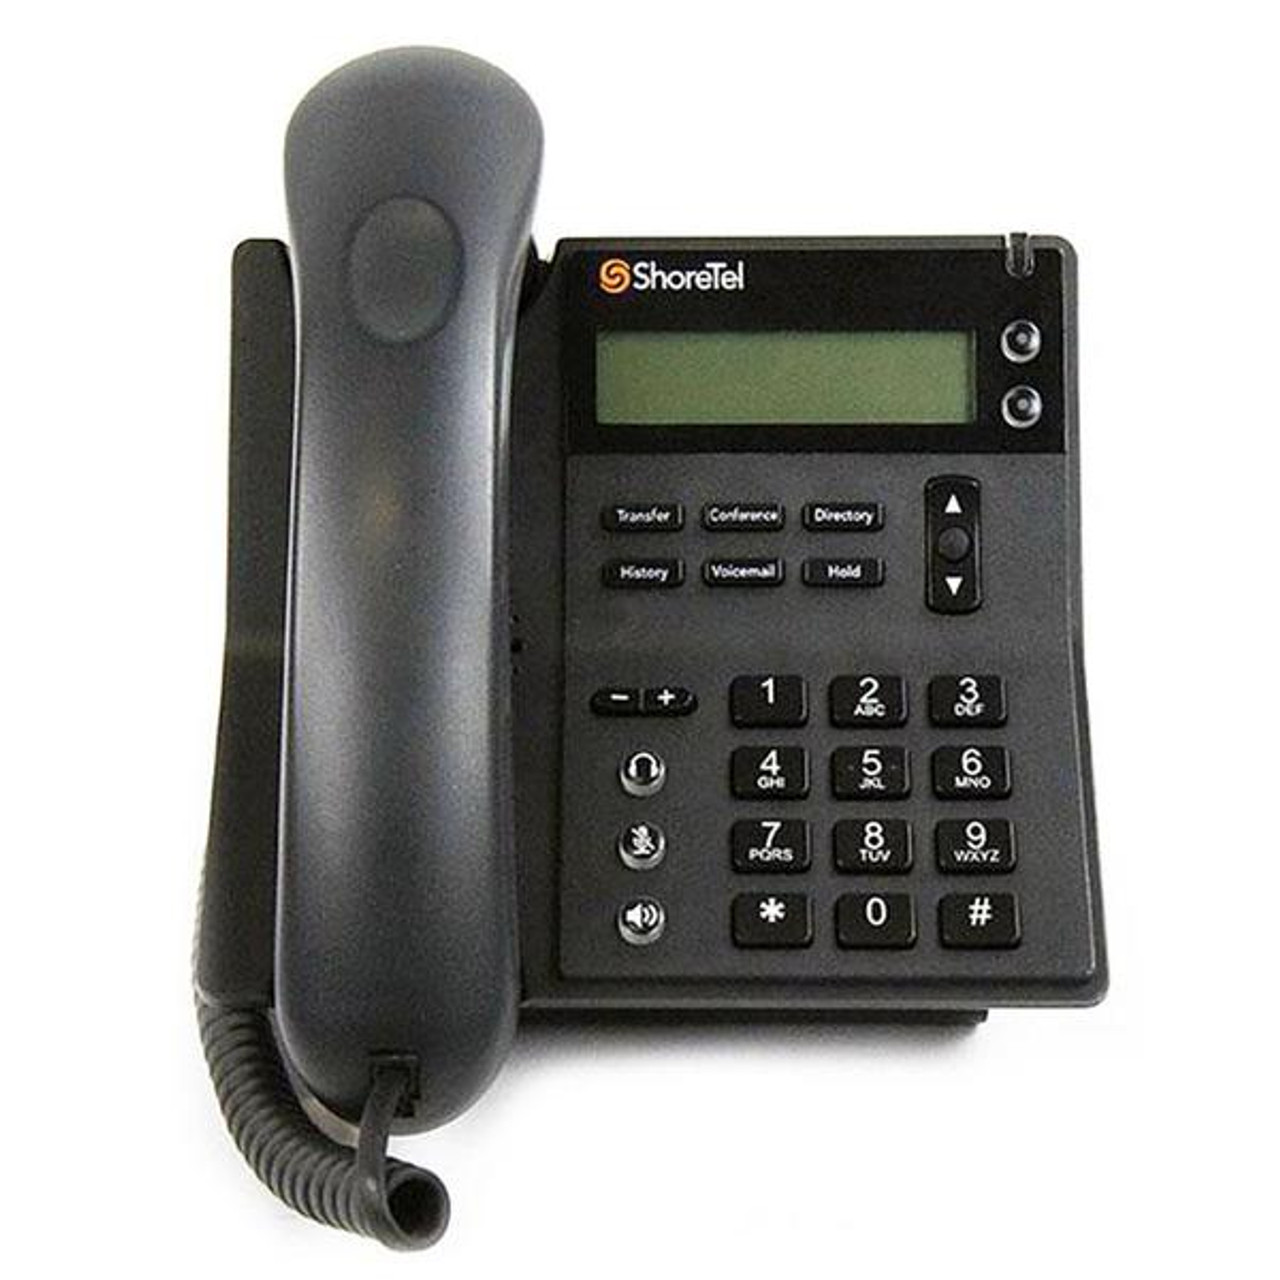 SHORETEL IP 420 2 LINE IP Phone